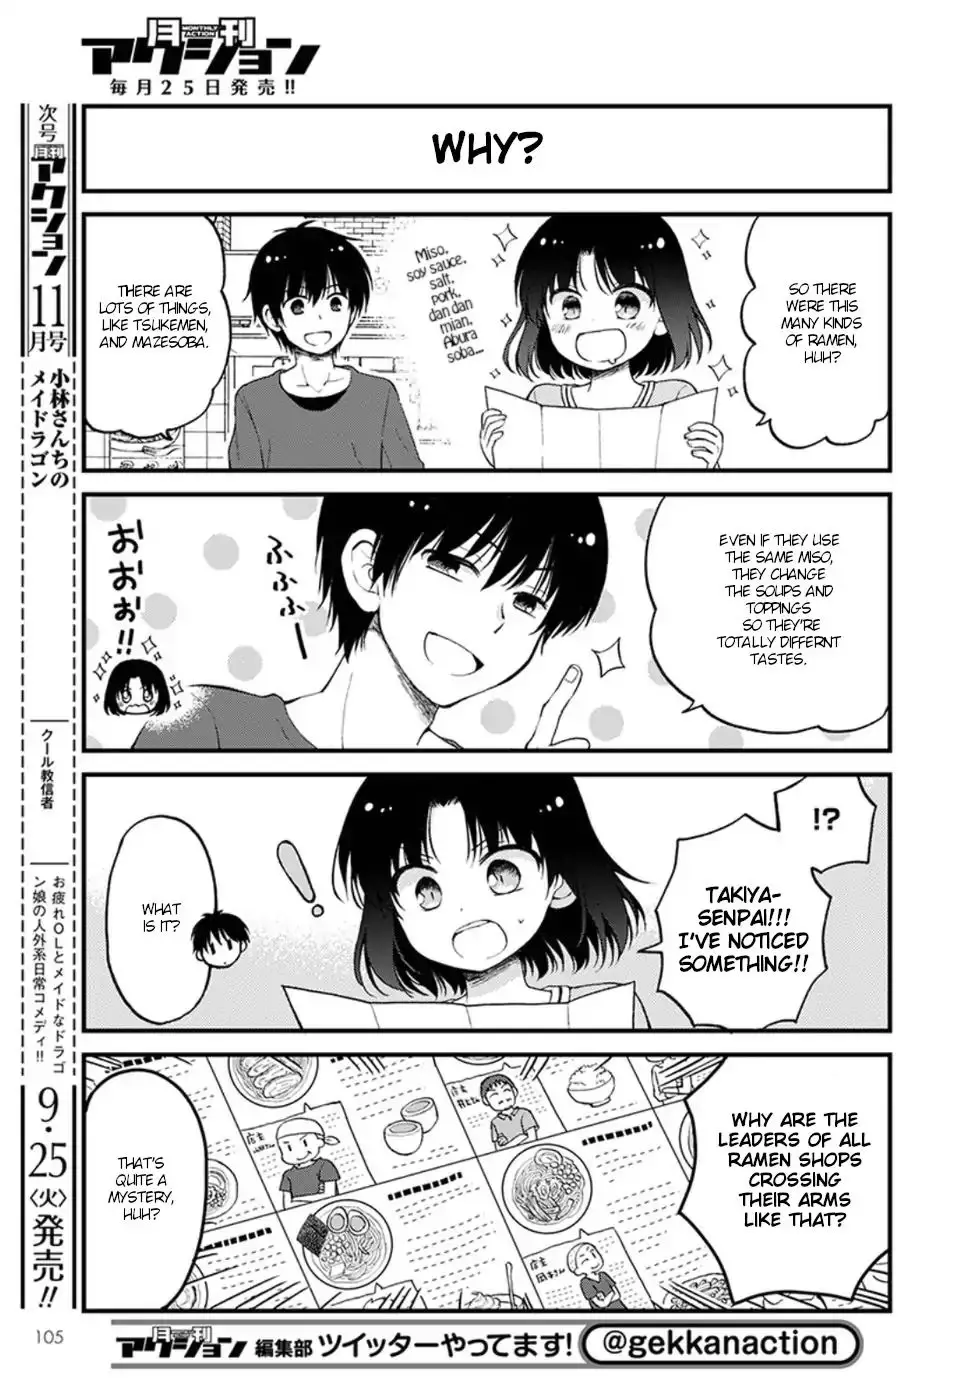 Kobayashi-San Chi No Maid Dragon: Elma Ol Nikki - 13 page 5